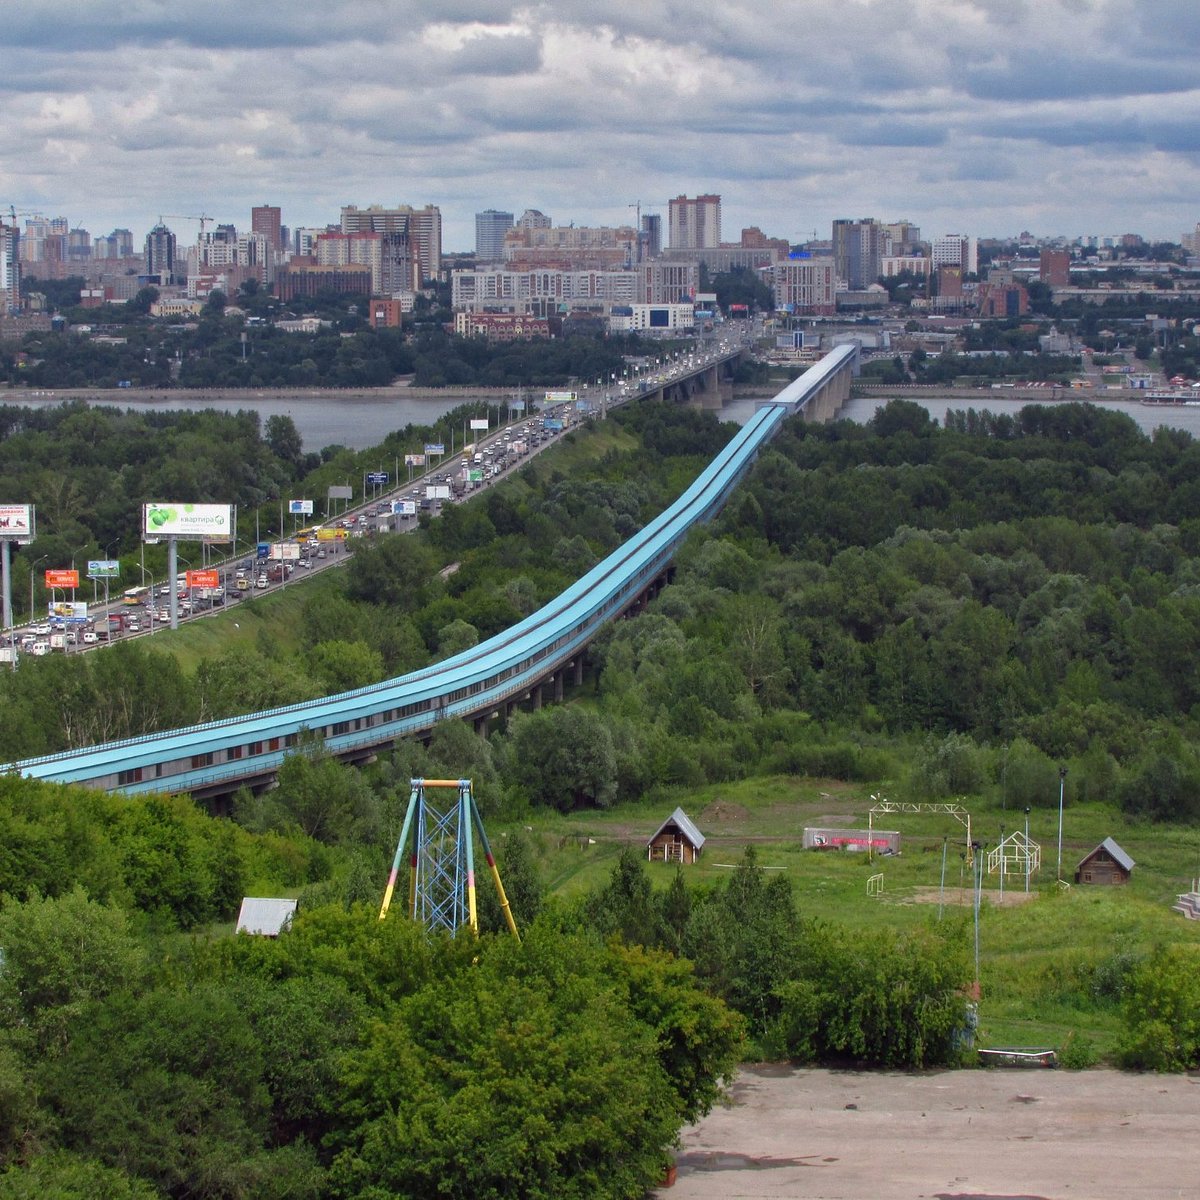 Места в новосибирске куда можно сходить интересные. Метромост мост Новосибирск. Крытый метромост в Новосибирске. Новосибирский метромост самый длинный в мире. Мост метрополитена в Новосибирске.